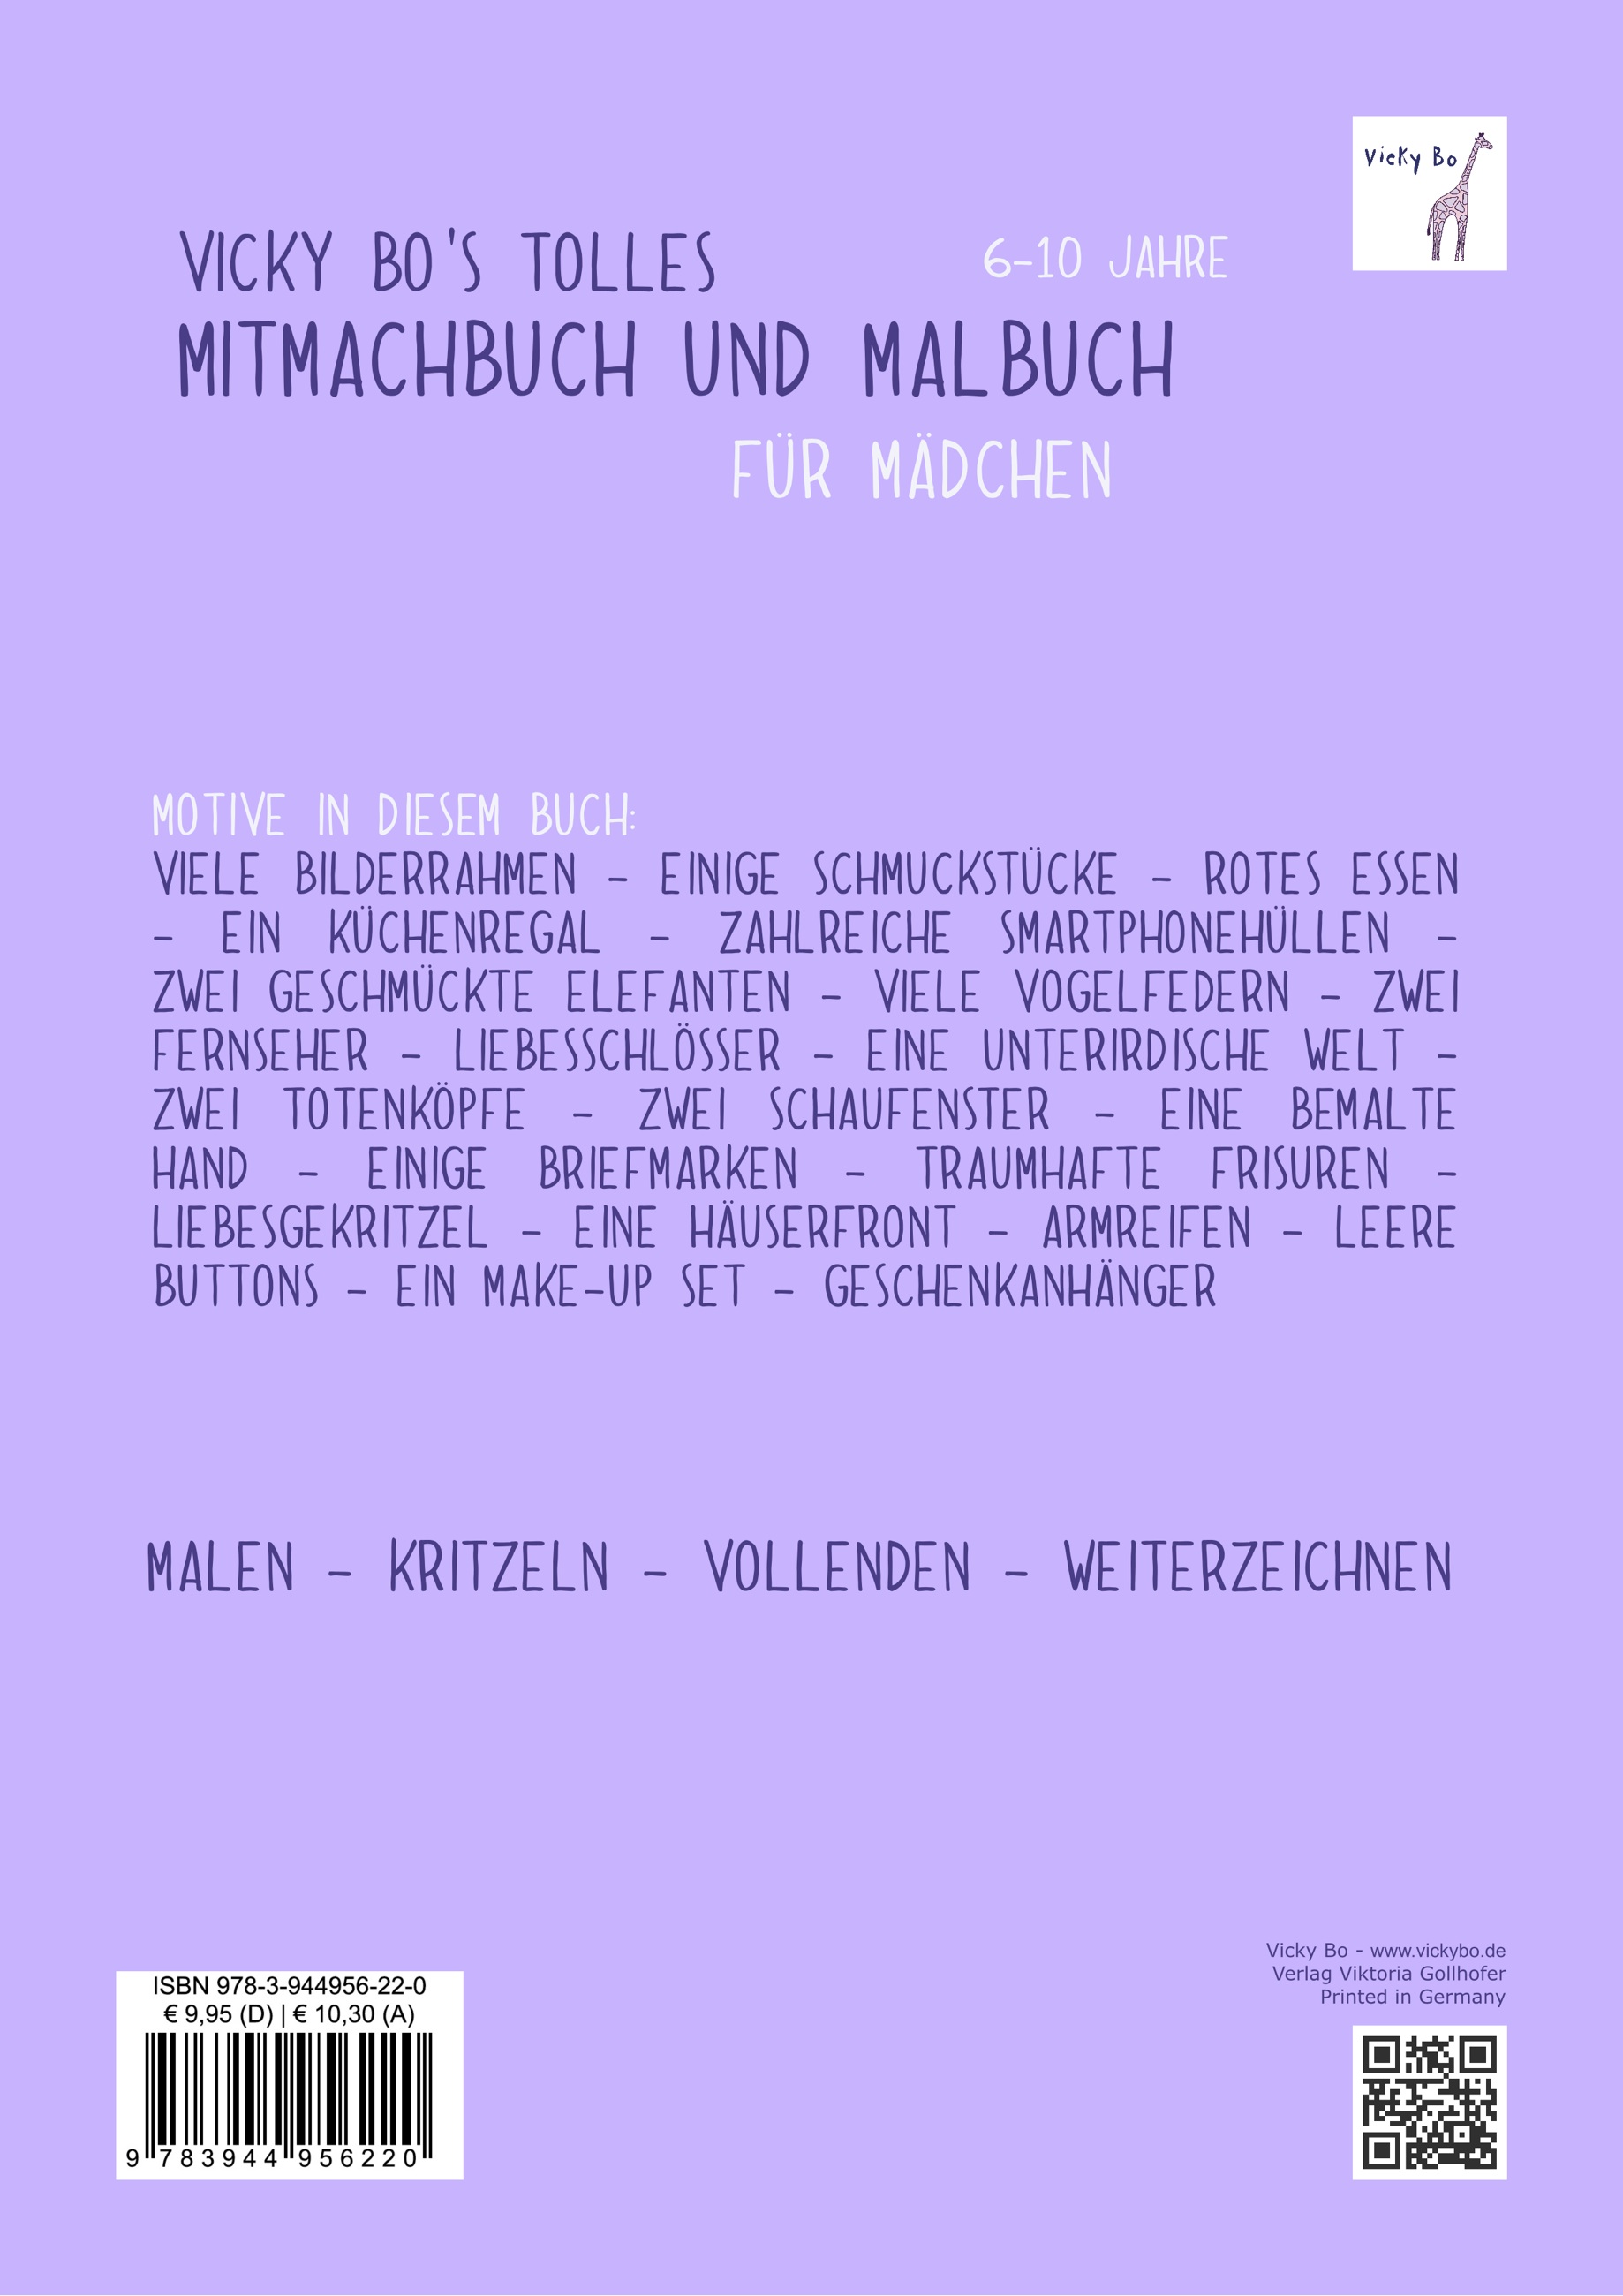 Mitmachbuch und Malbuch – Mädchen. 6-10 Jahre